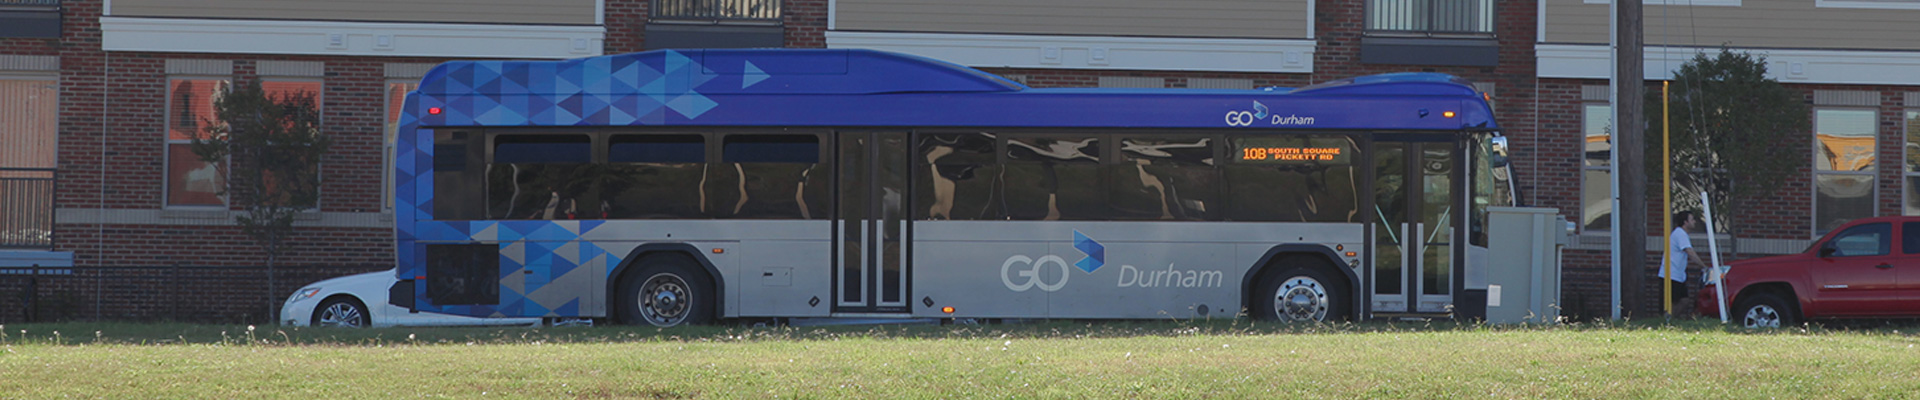 GoDurham Bus driving near Durham Station